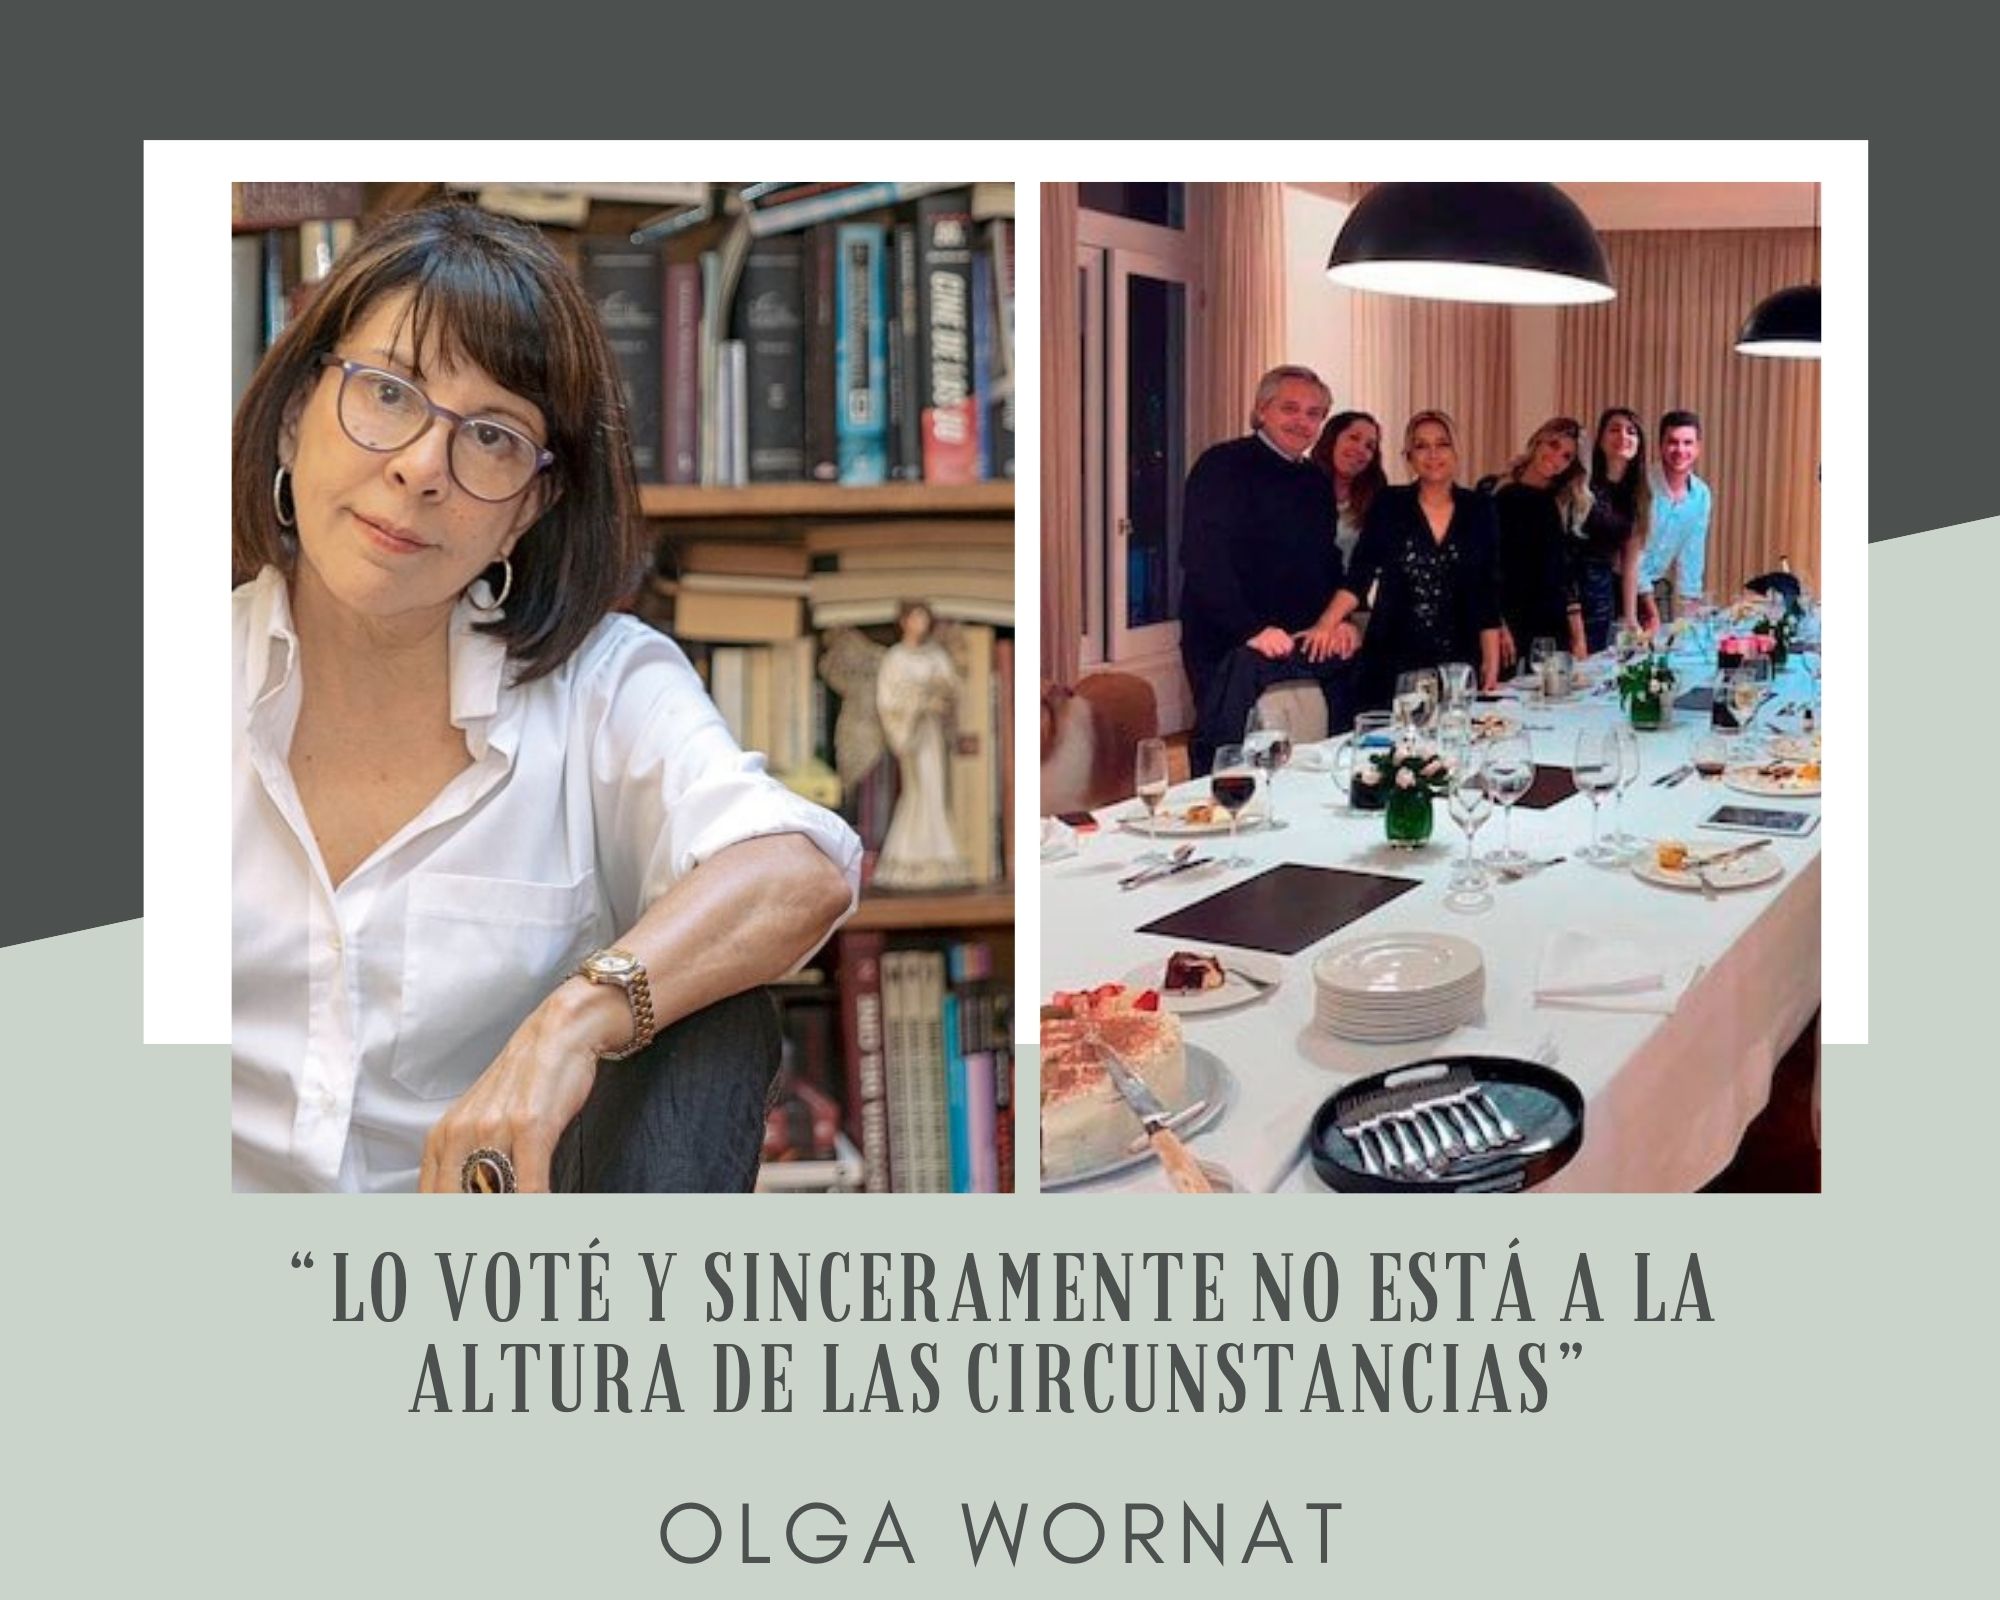 Olga Wornat,“Lo voté y sinceramente no está a la altura de las circunstancias”